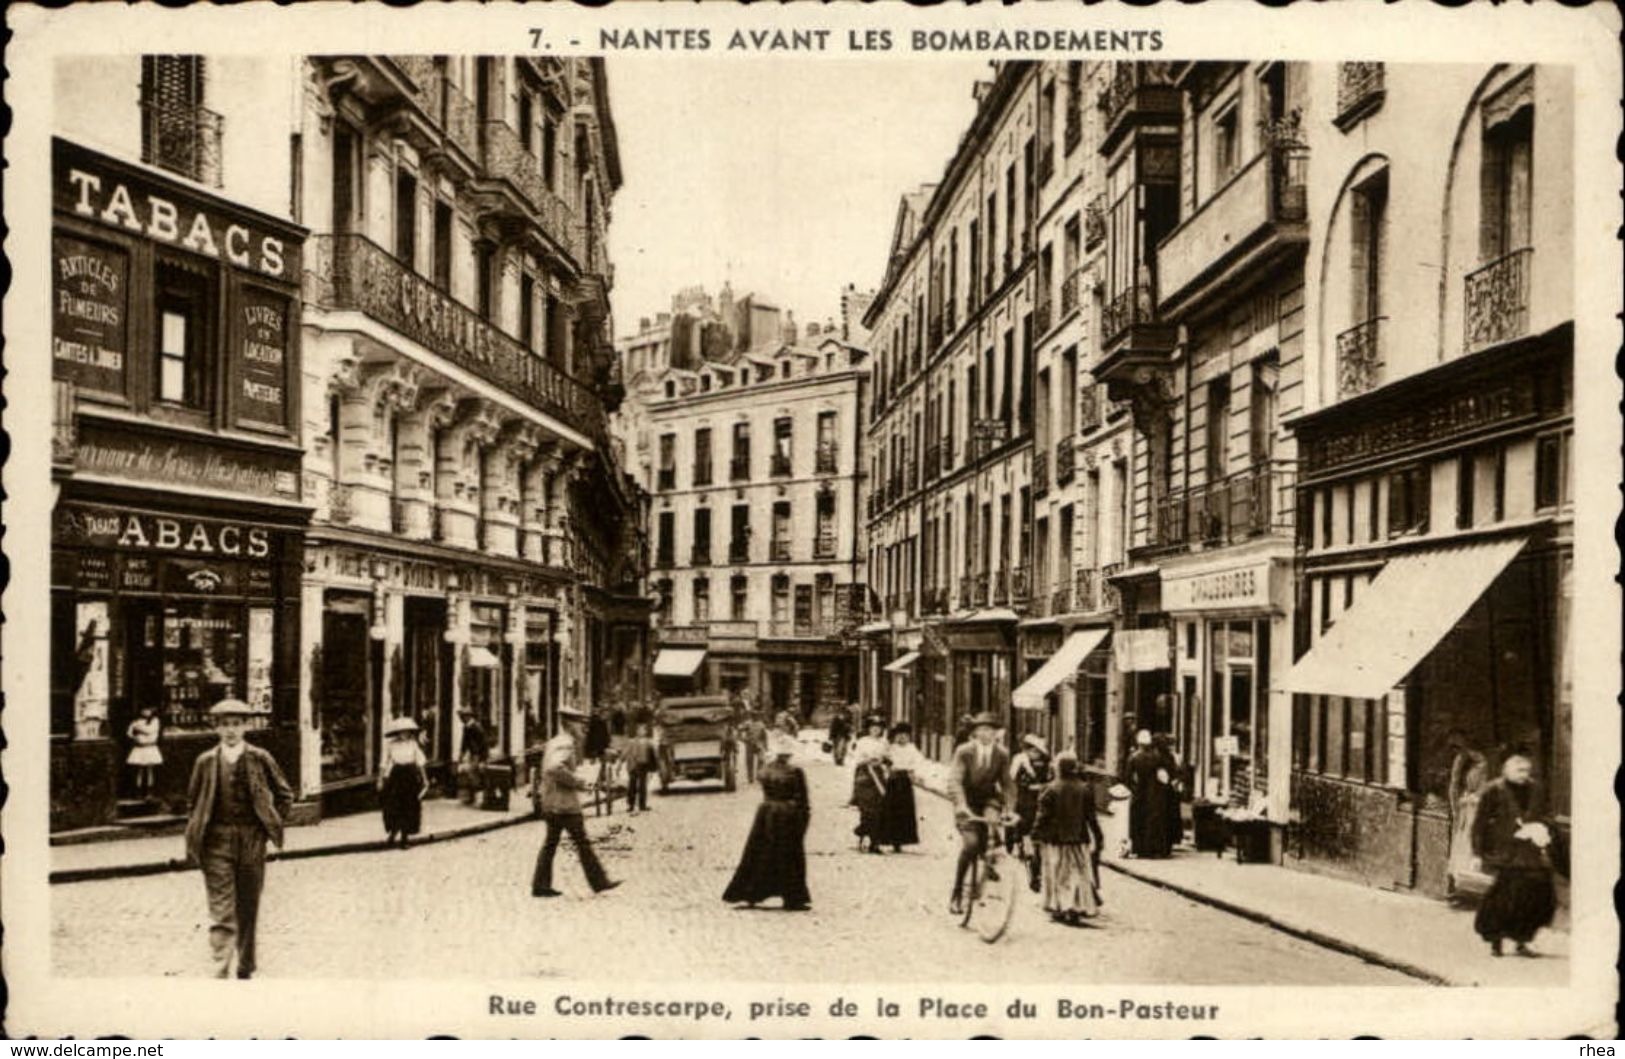 44 - NANTES - Nantes Avant Les Bombardements - Rue Contrescarpe - Nantes